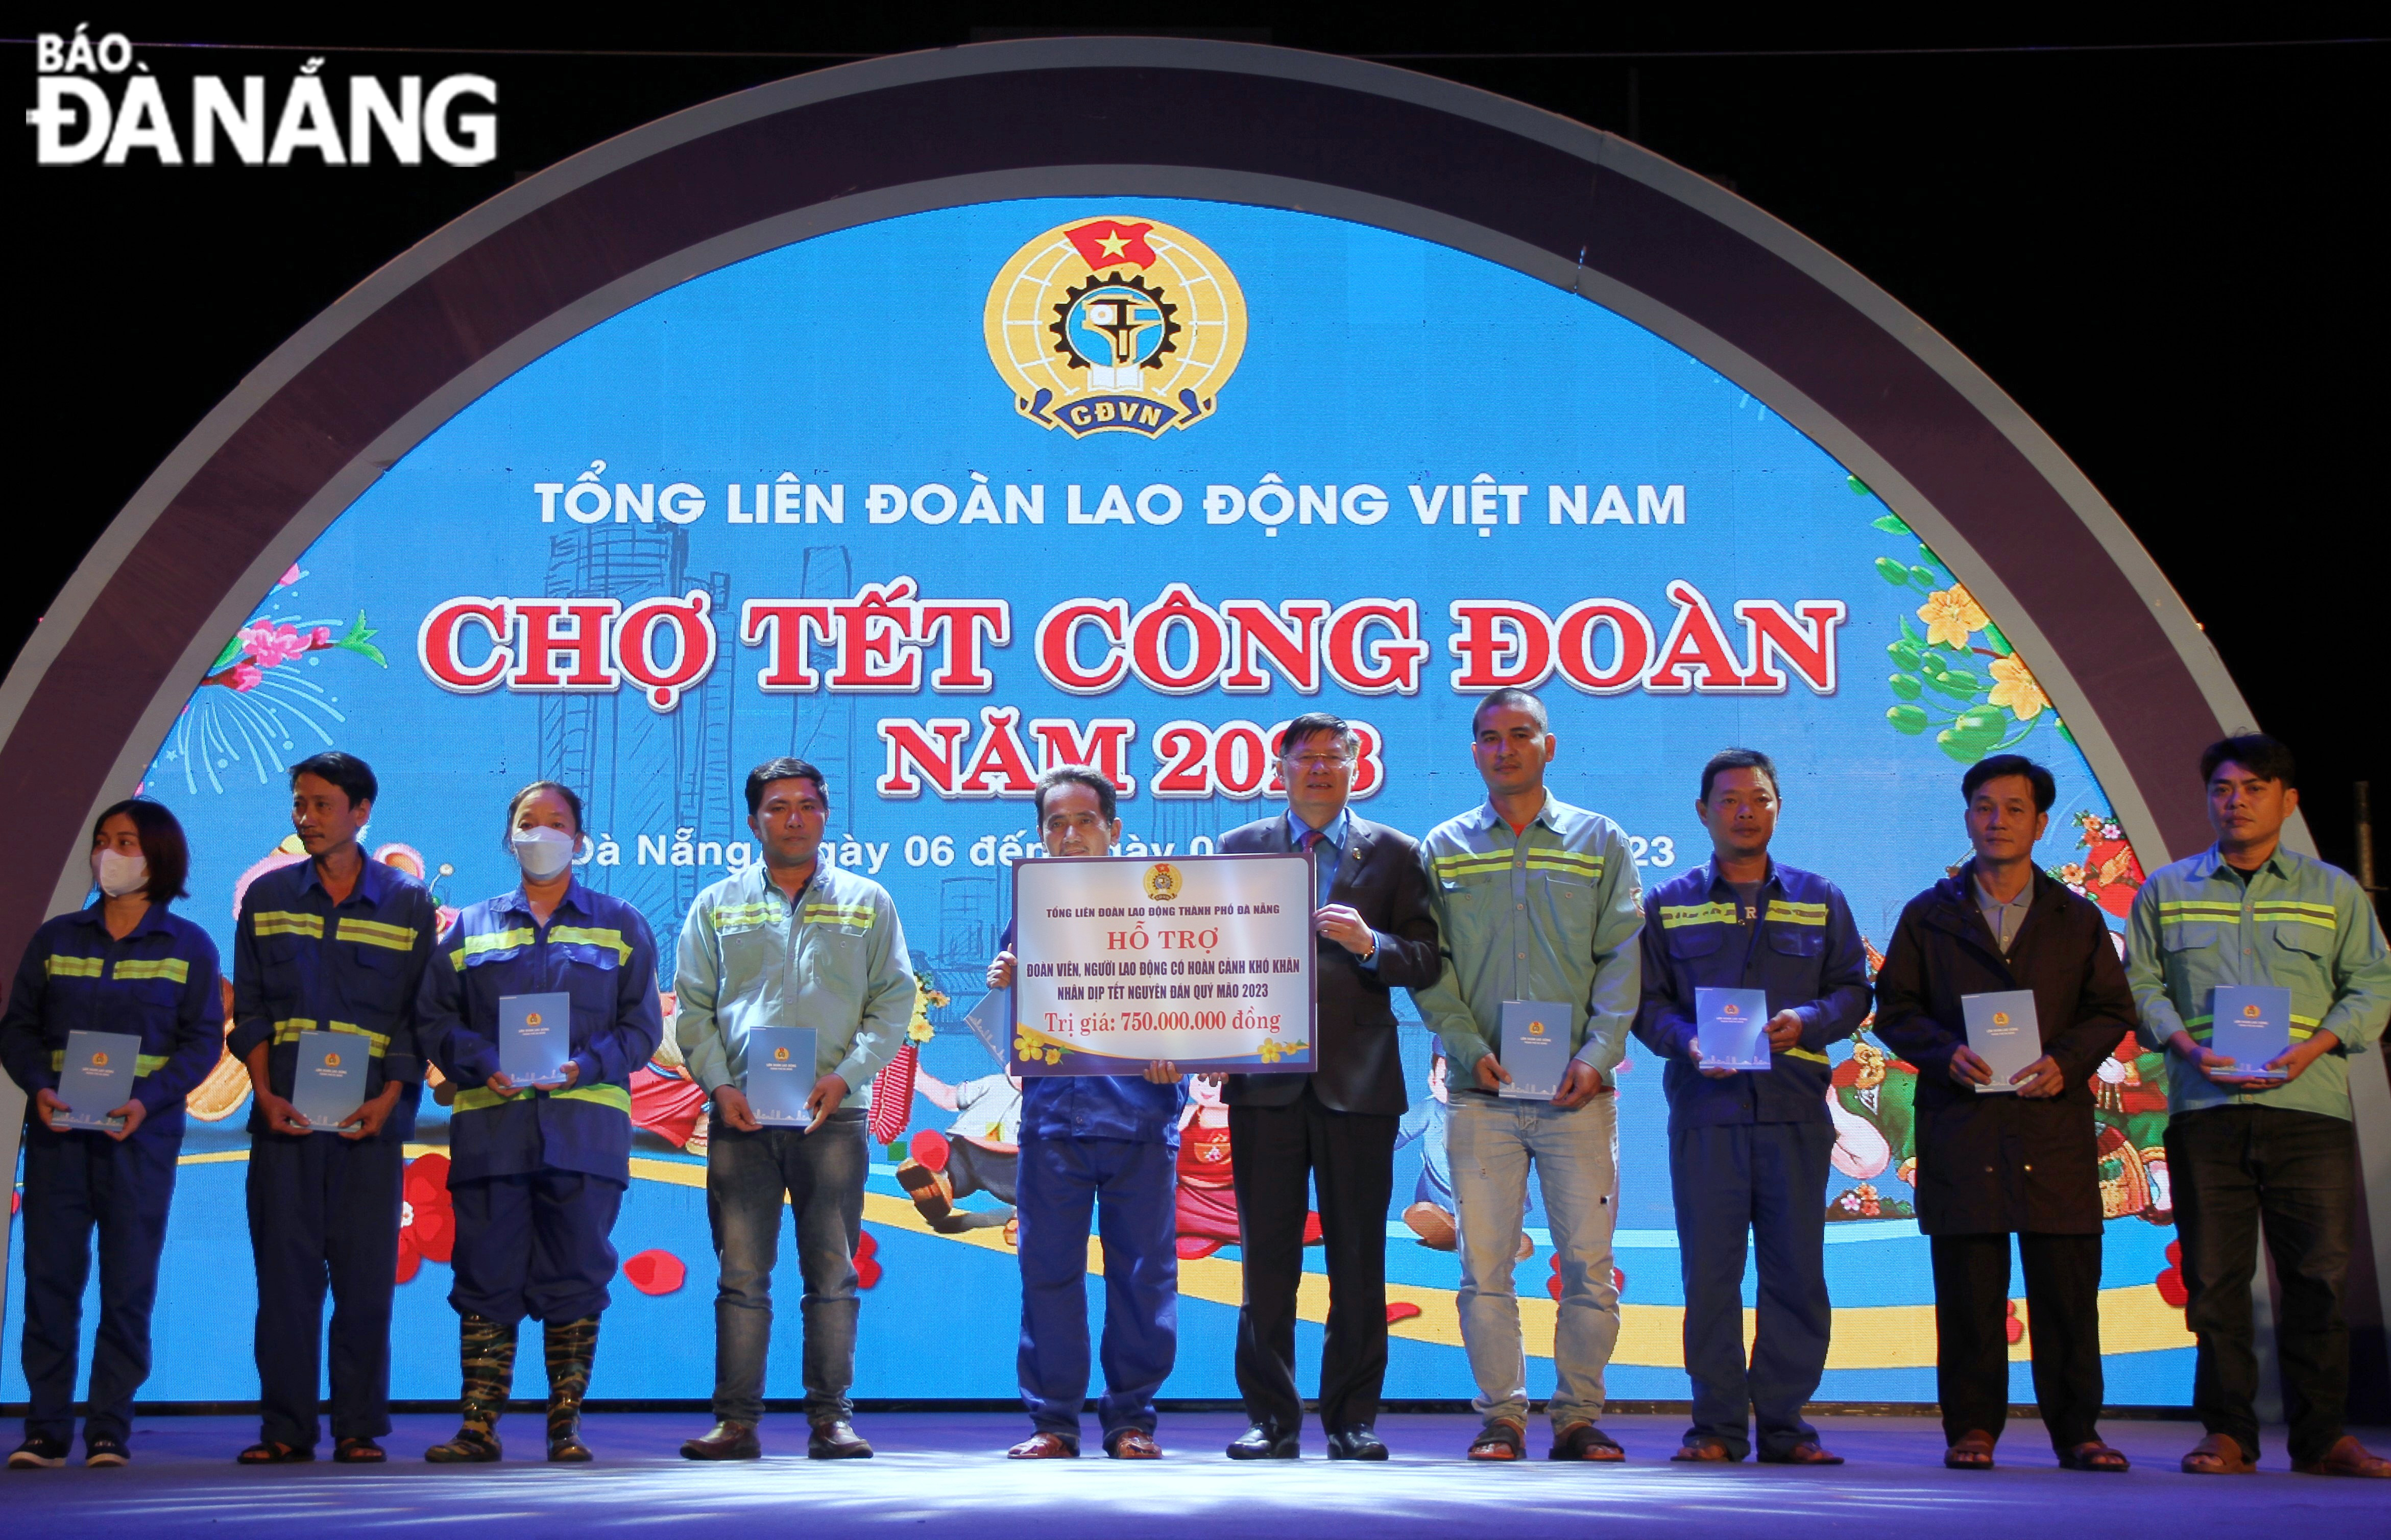 Lãnh đạo Tổng LĐLĐ Việt tặng 10.000 phiếu mua hàng, tổng trị giá 750 triệu đồng cho đoàn viên, người lao động trên địa bàn thành phố để mua sắm tại chợ Tết Công đoàn năm 2023.